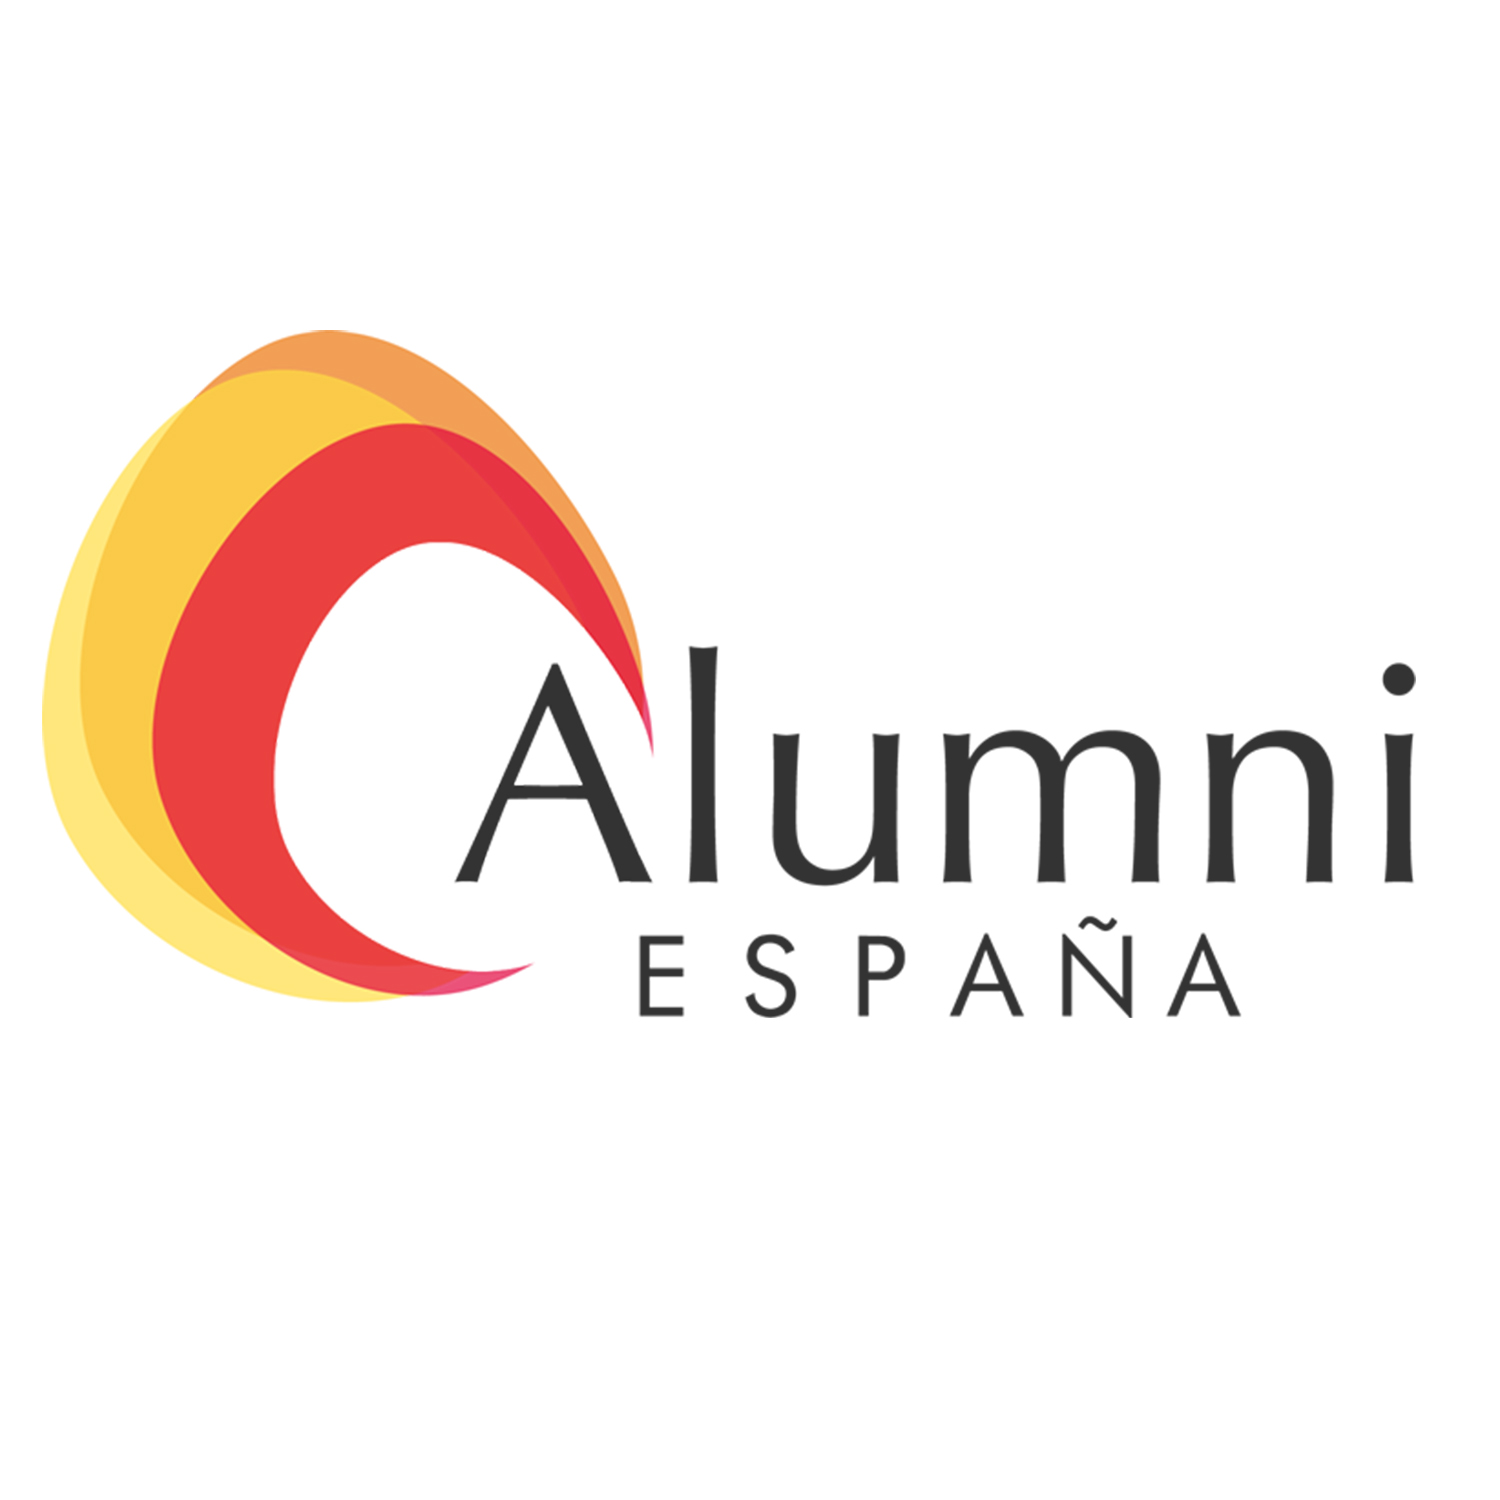 ALUMNI España 2018 se cita en Salamanca con motivo del Octavo Centenario